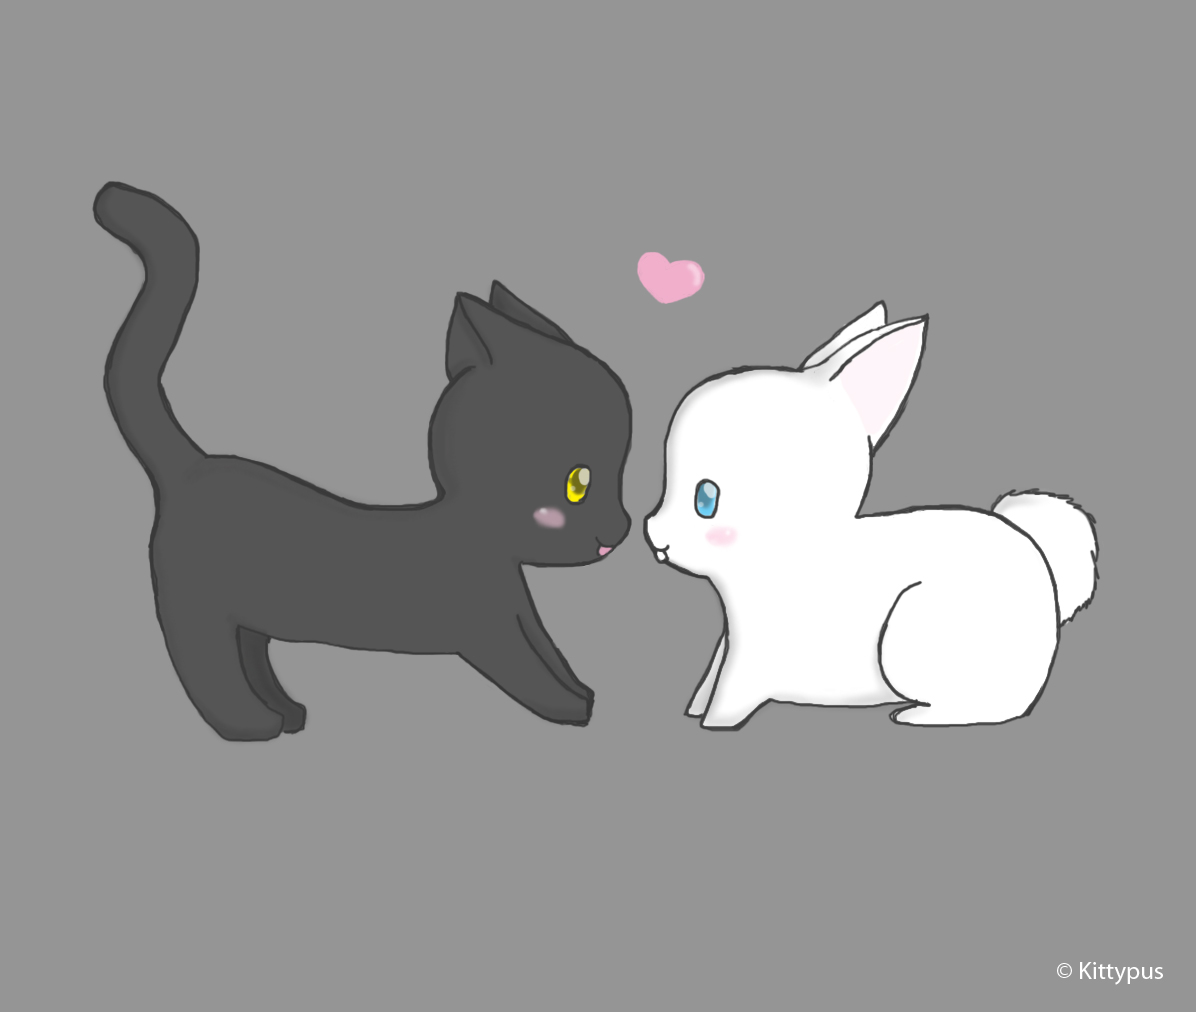 Kitten and bunny love by Kittypus on DeviantArt